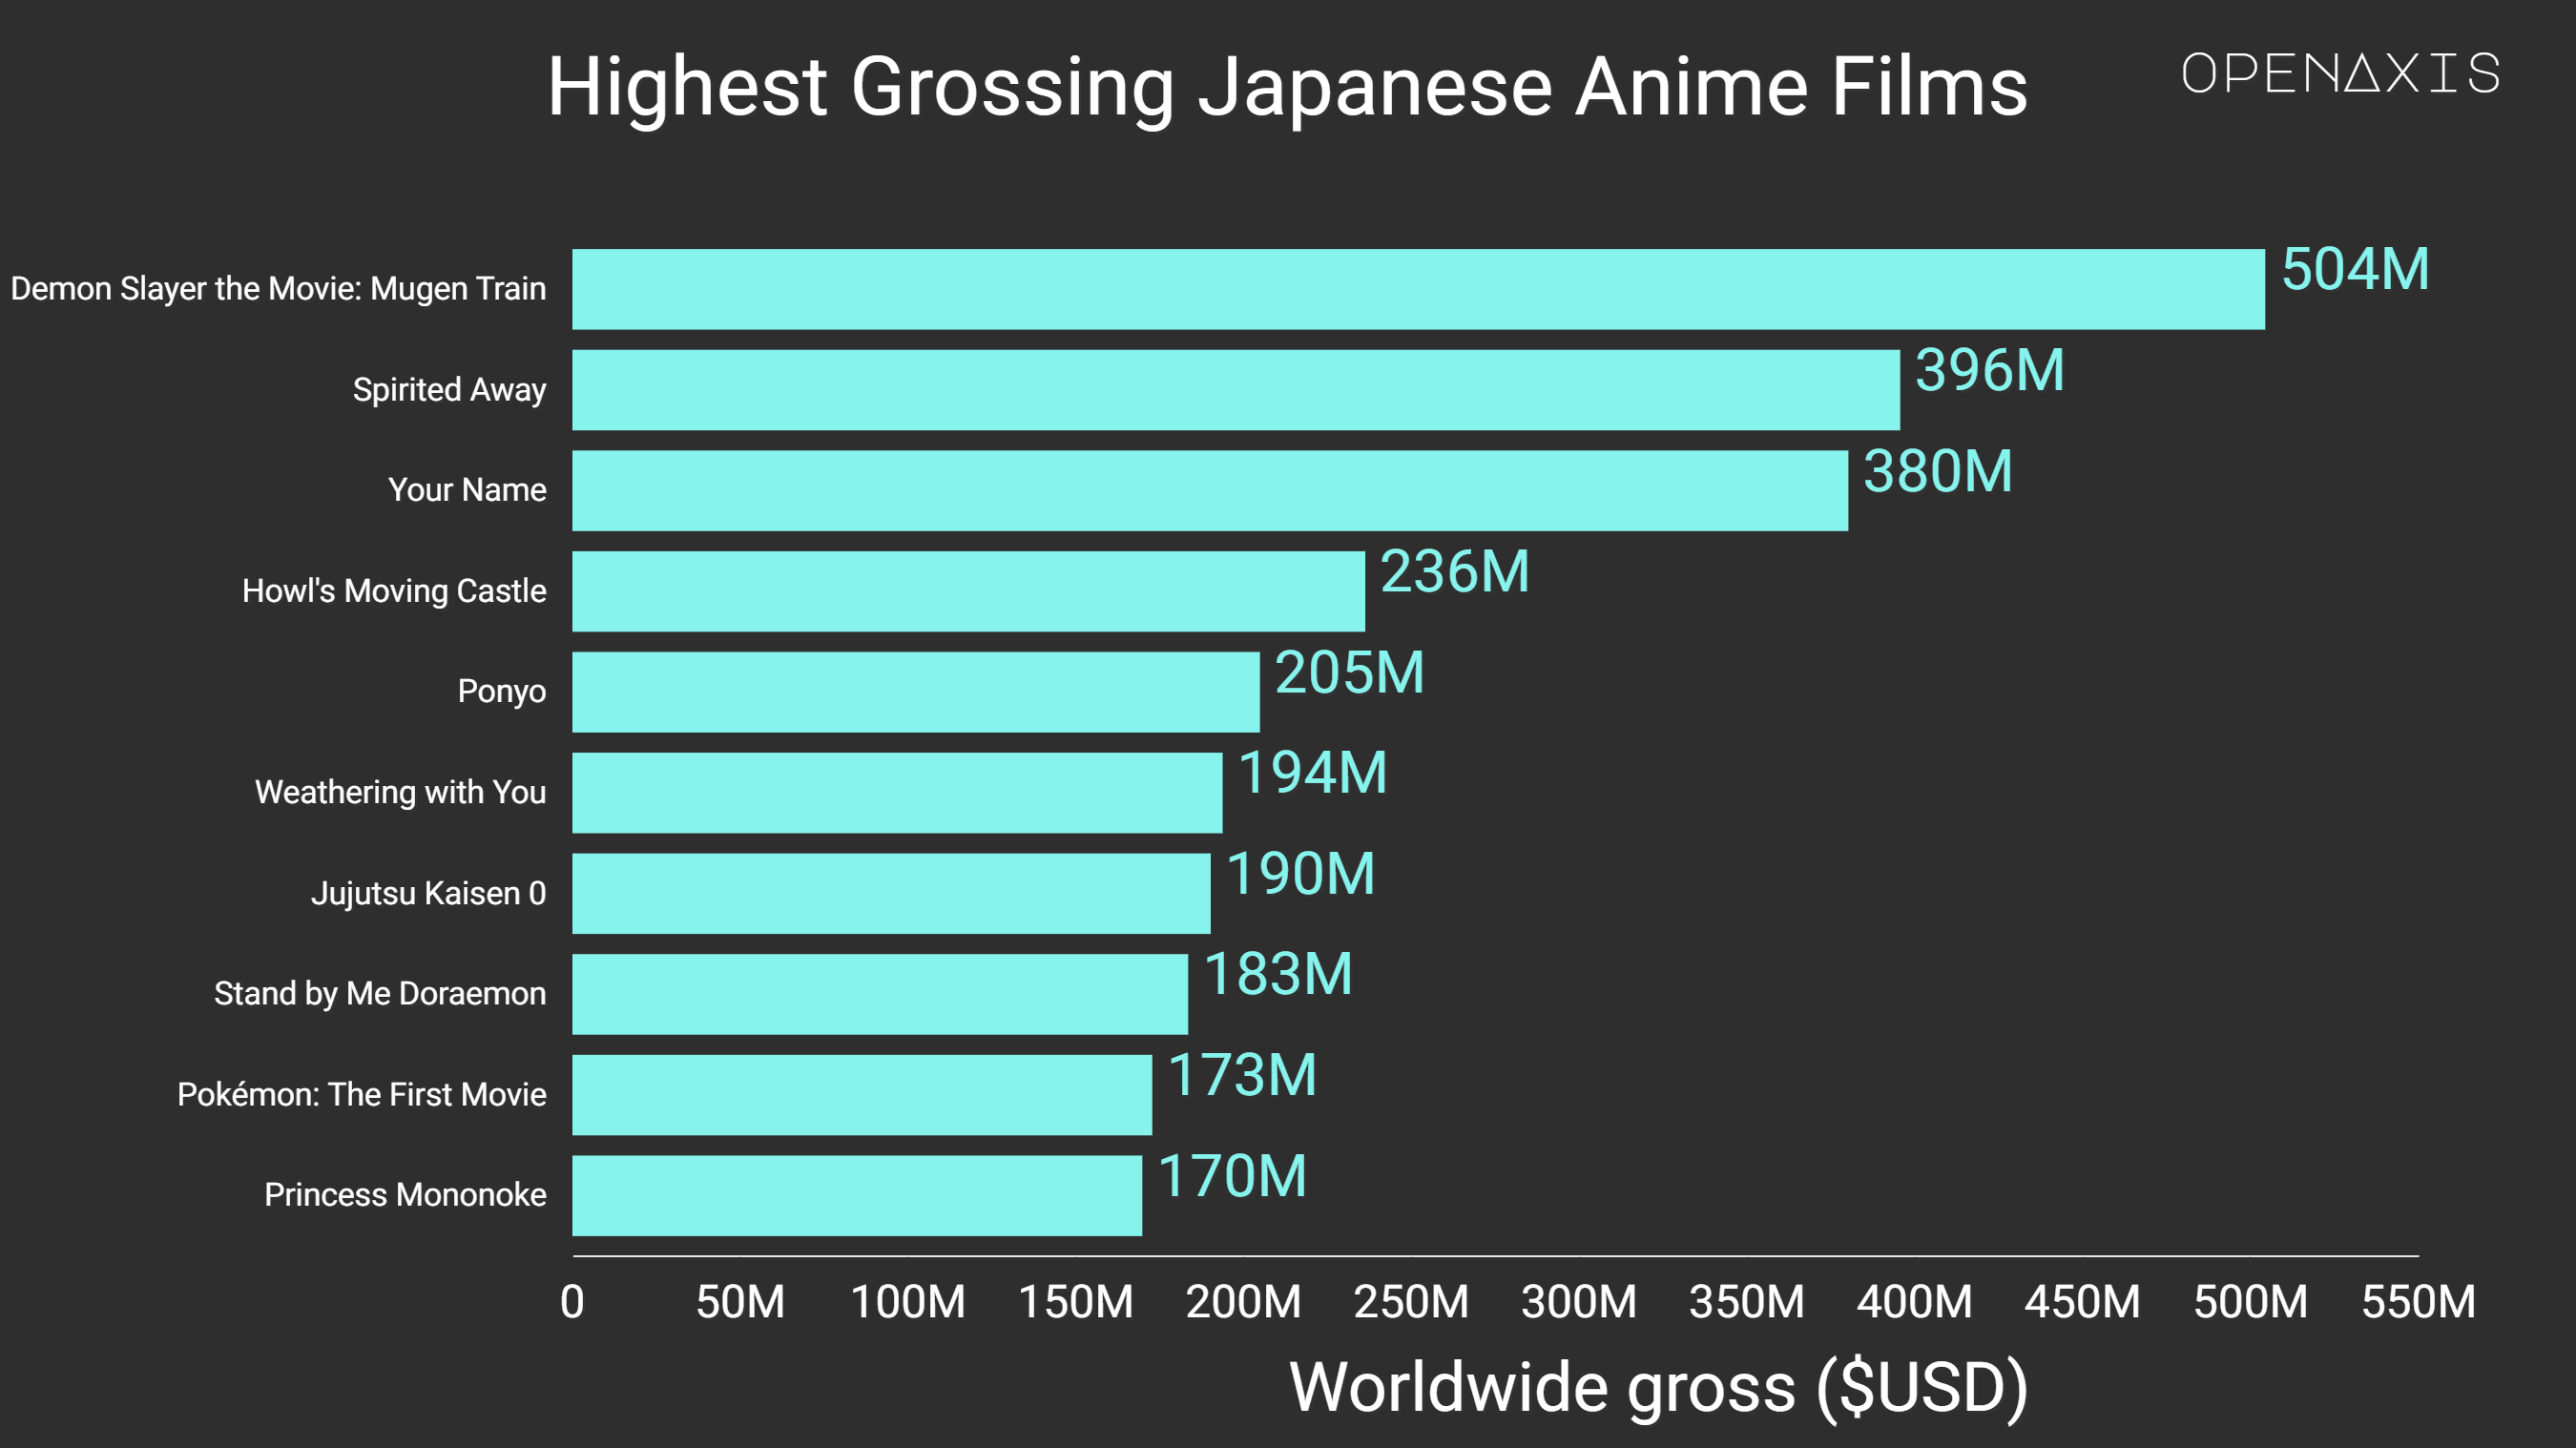 "Highest Grossing Japanese Anime Films"